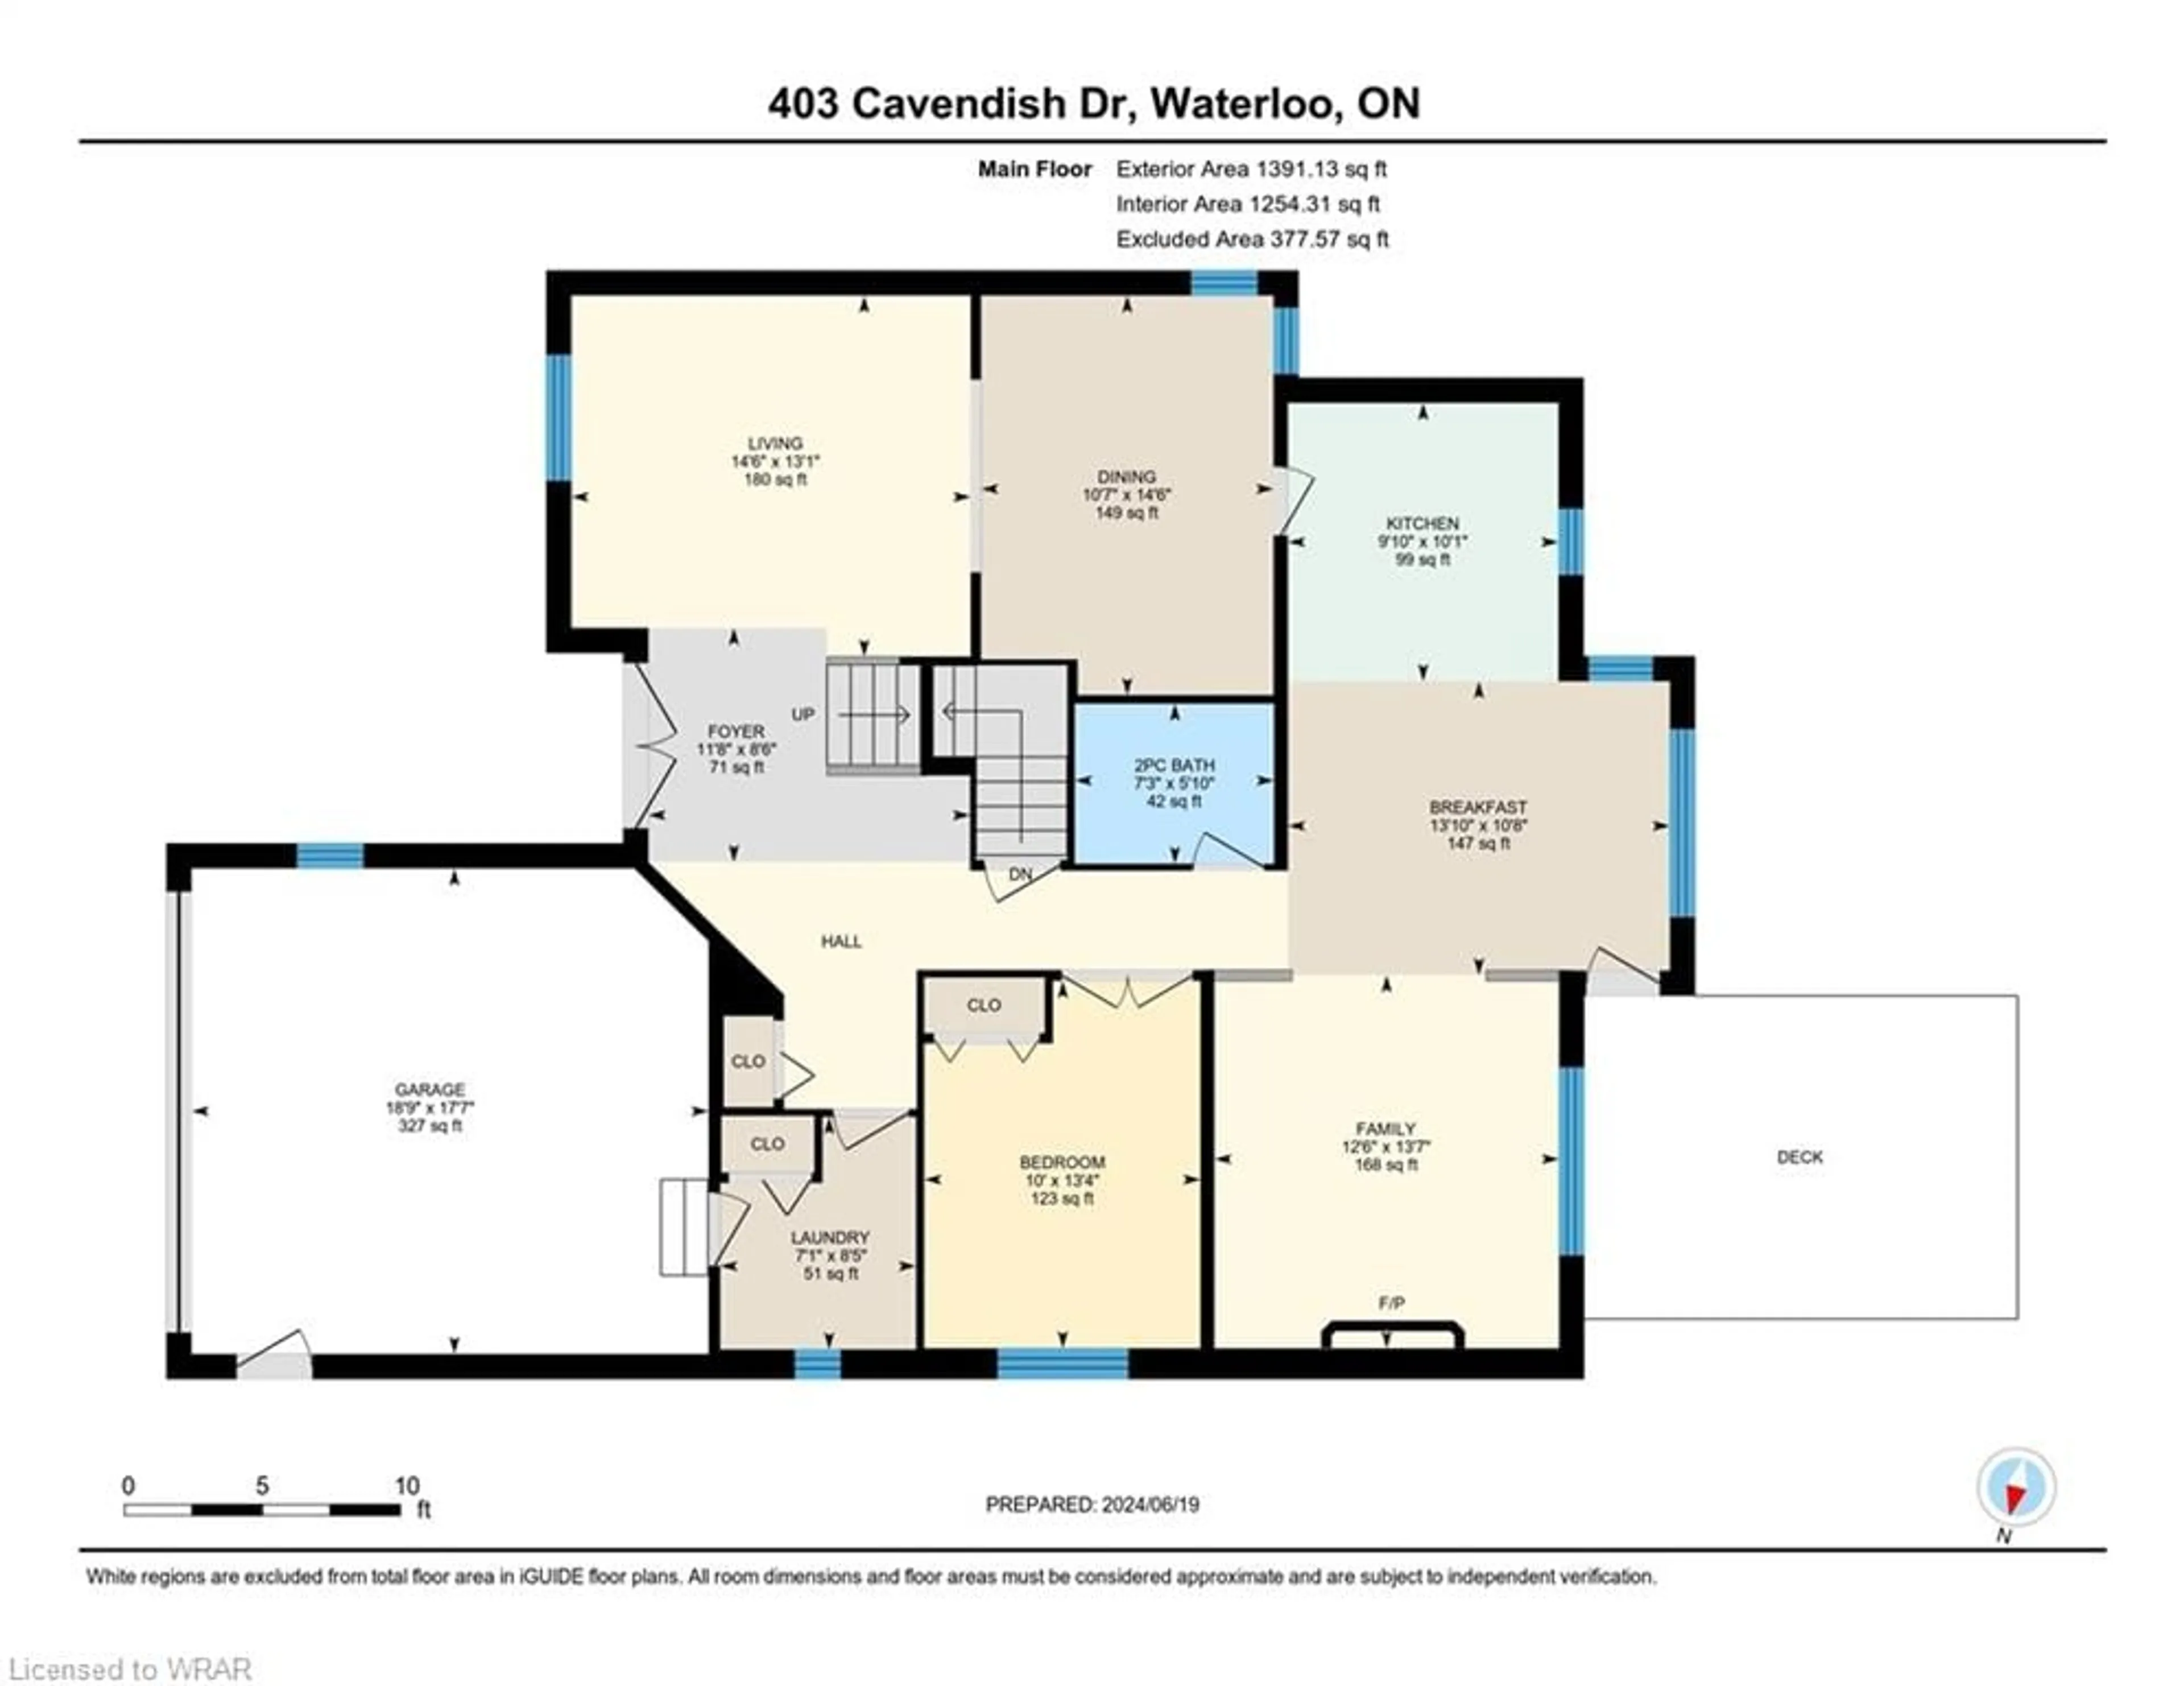 Floor plan for 403 Cavendish Dr, Waterloo Ontario N2T 2N6